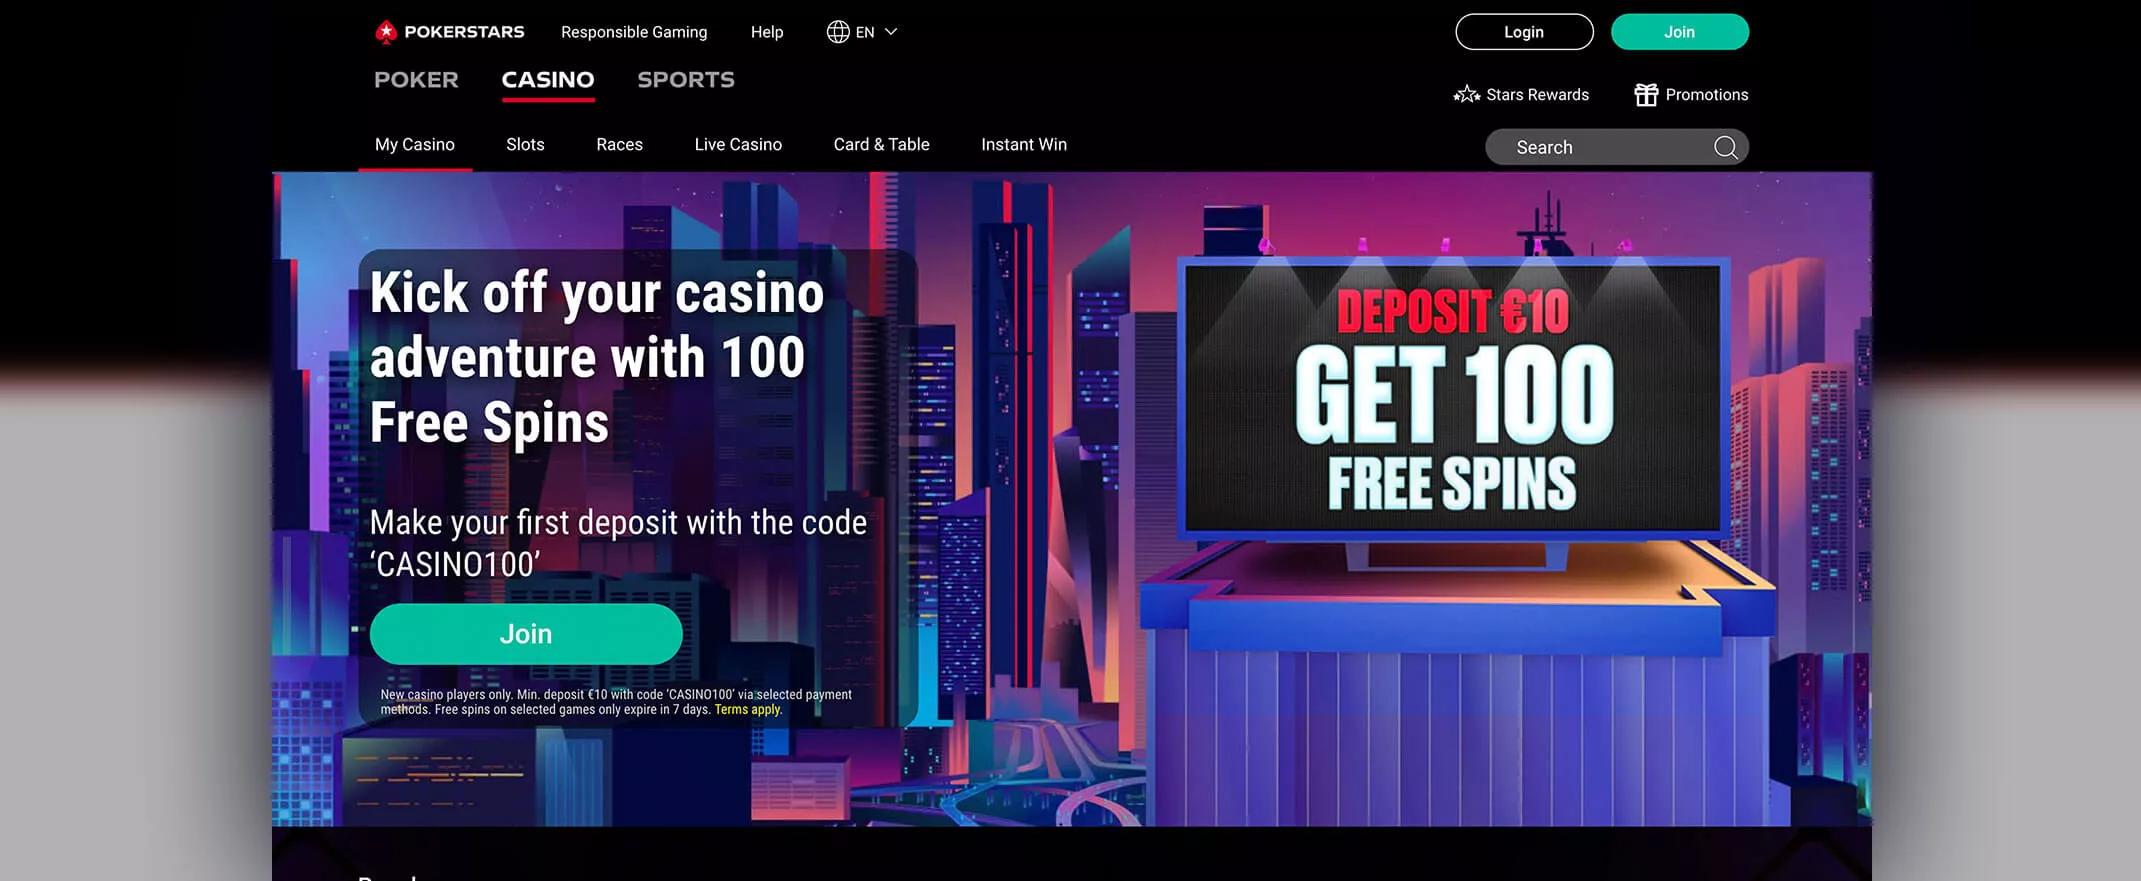 Pokerstars Casino Review screenshot of the homepage